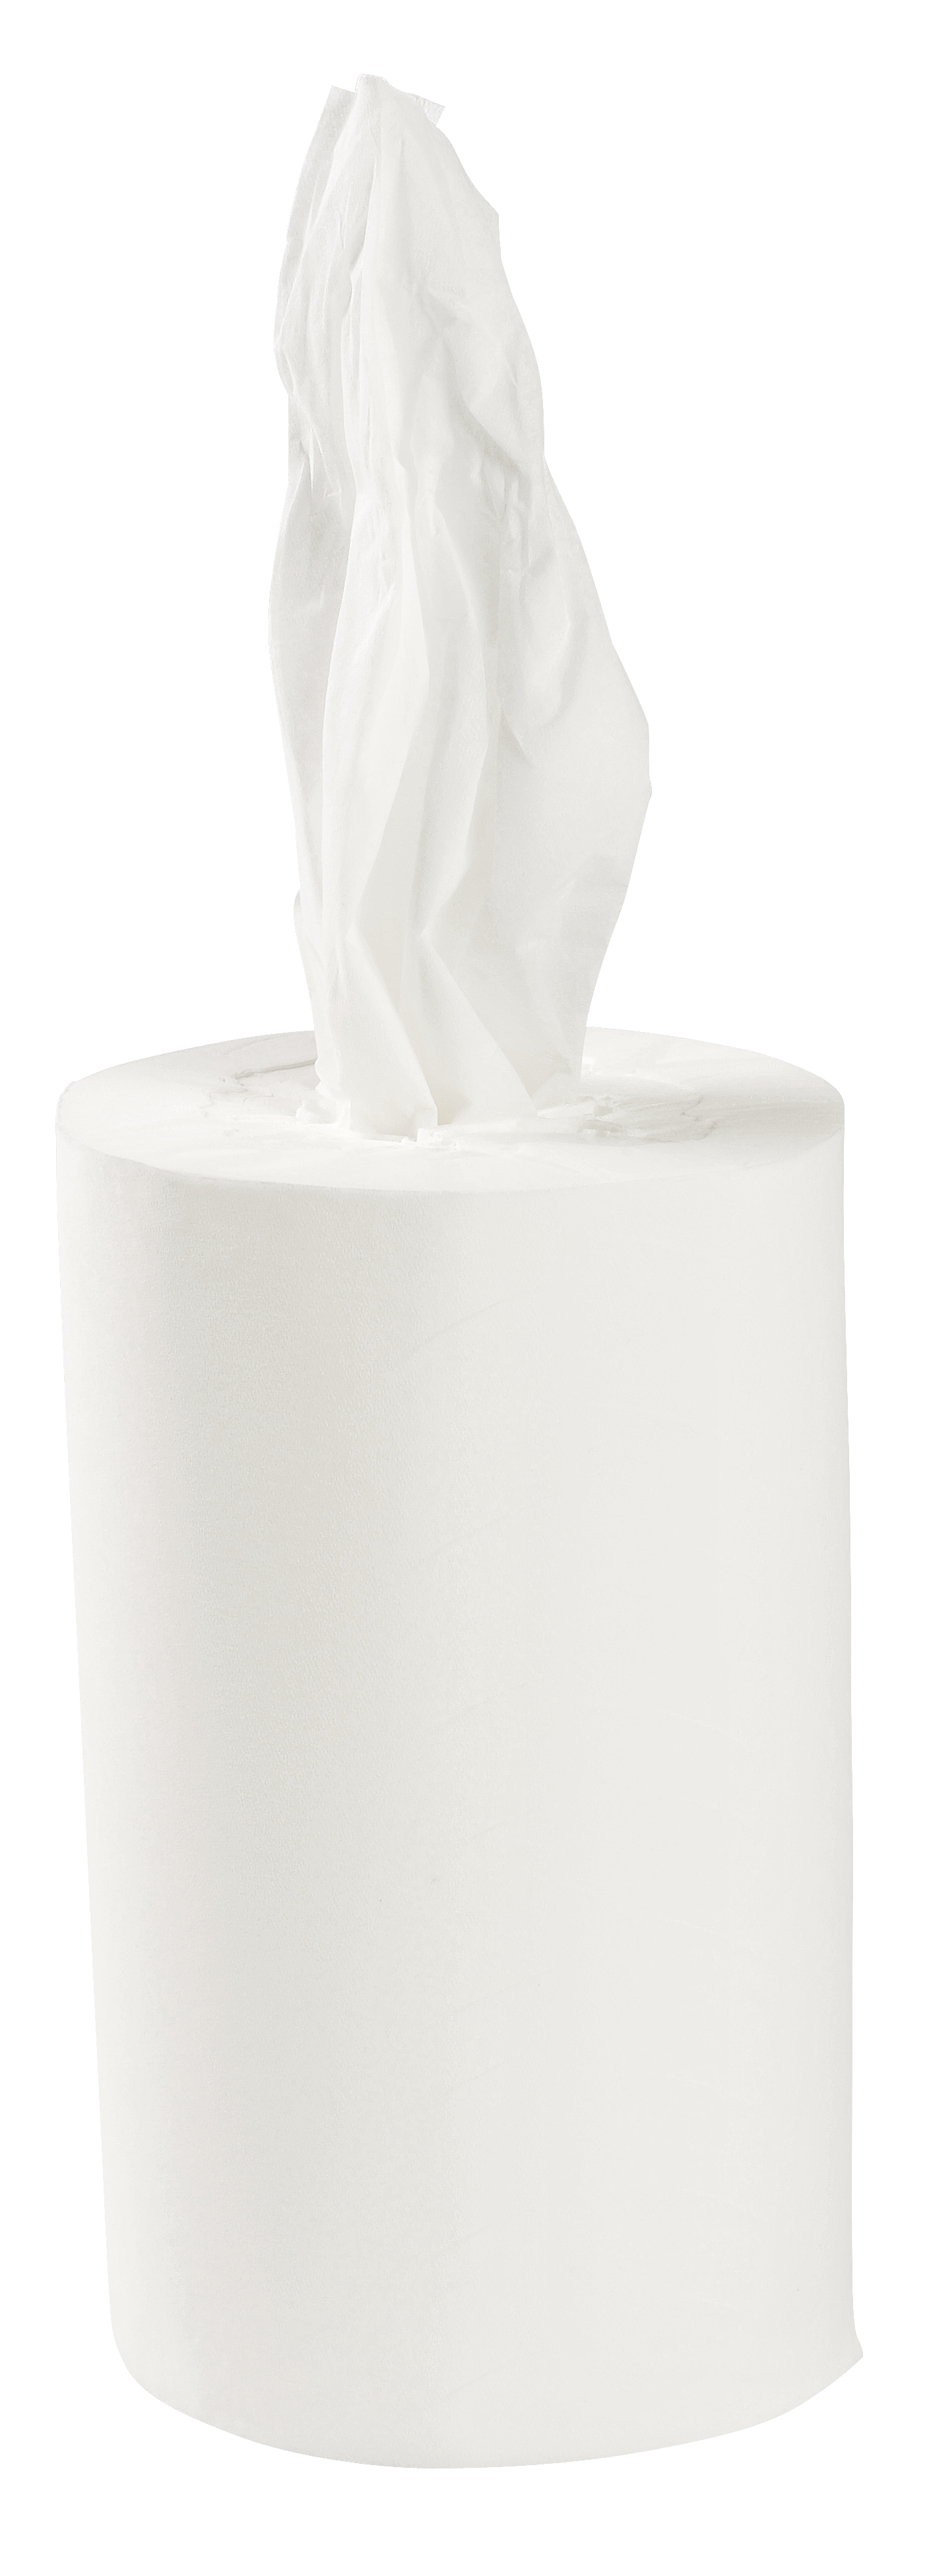 Handtuchrolle Mini Zellstoff 1-lagig, unperforiert, Innenabrollung, weiß, 120 m x 20 cm